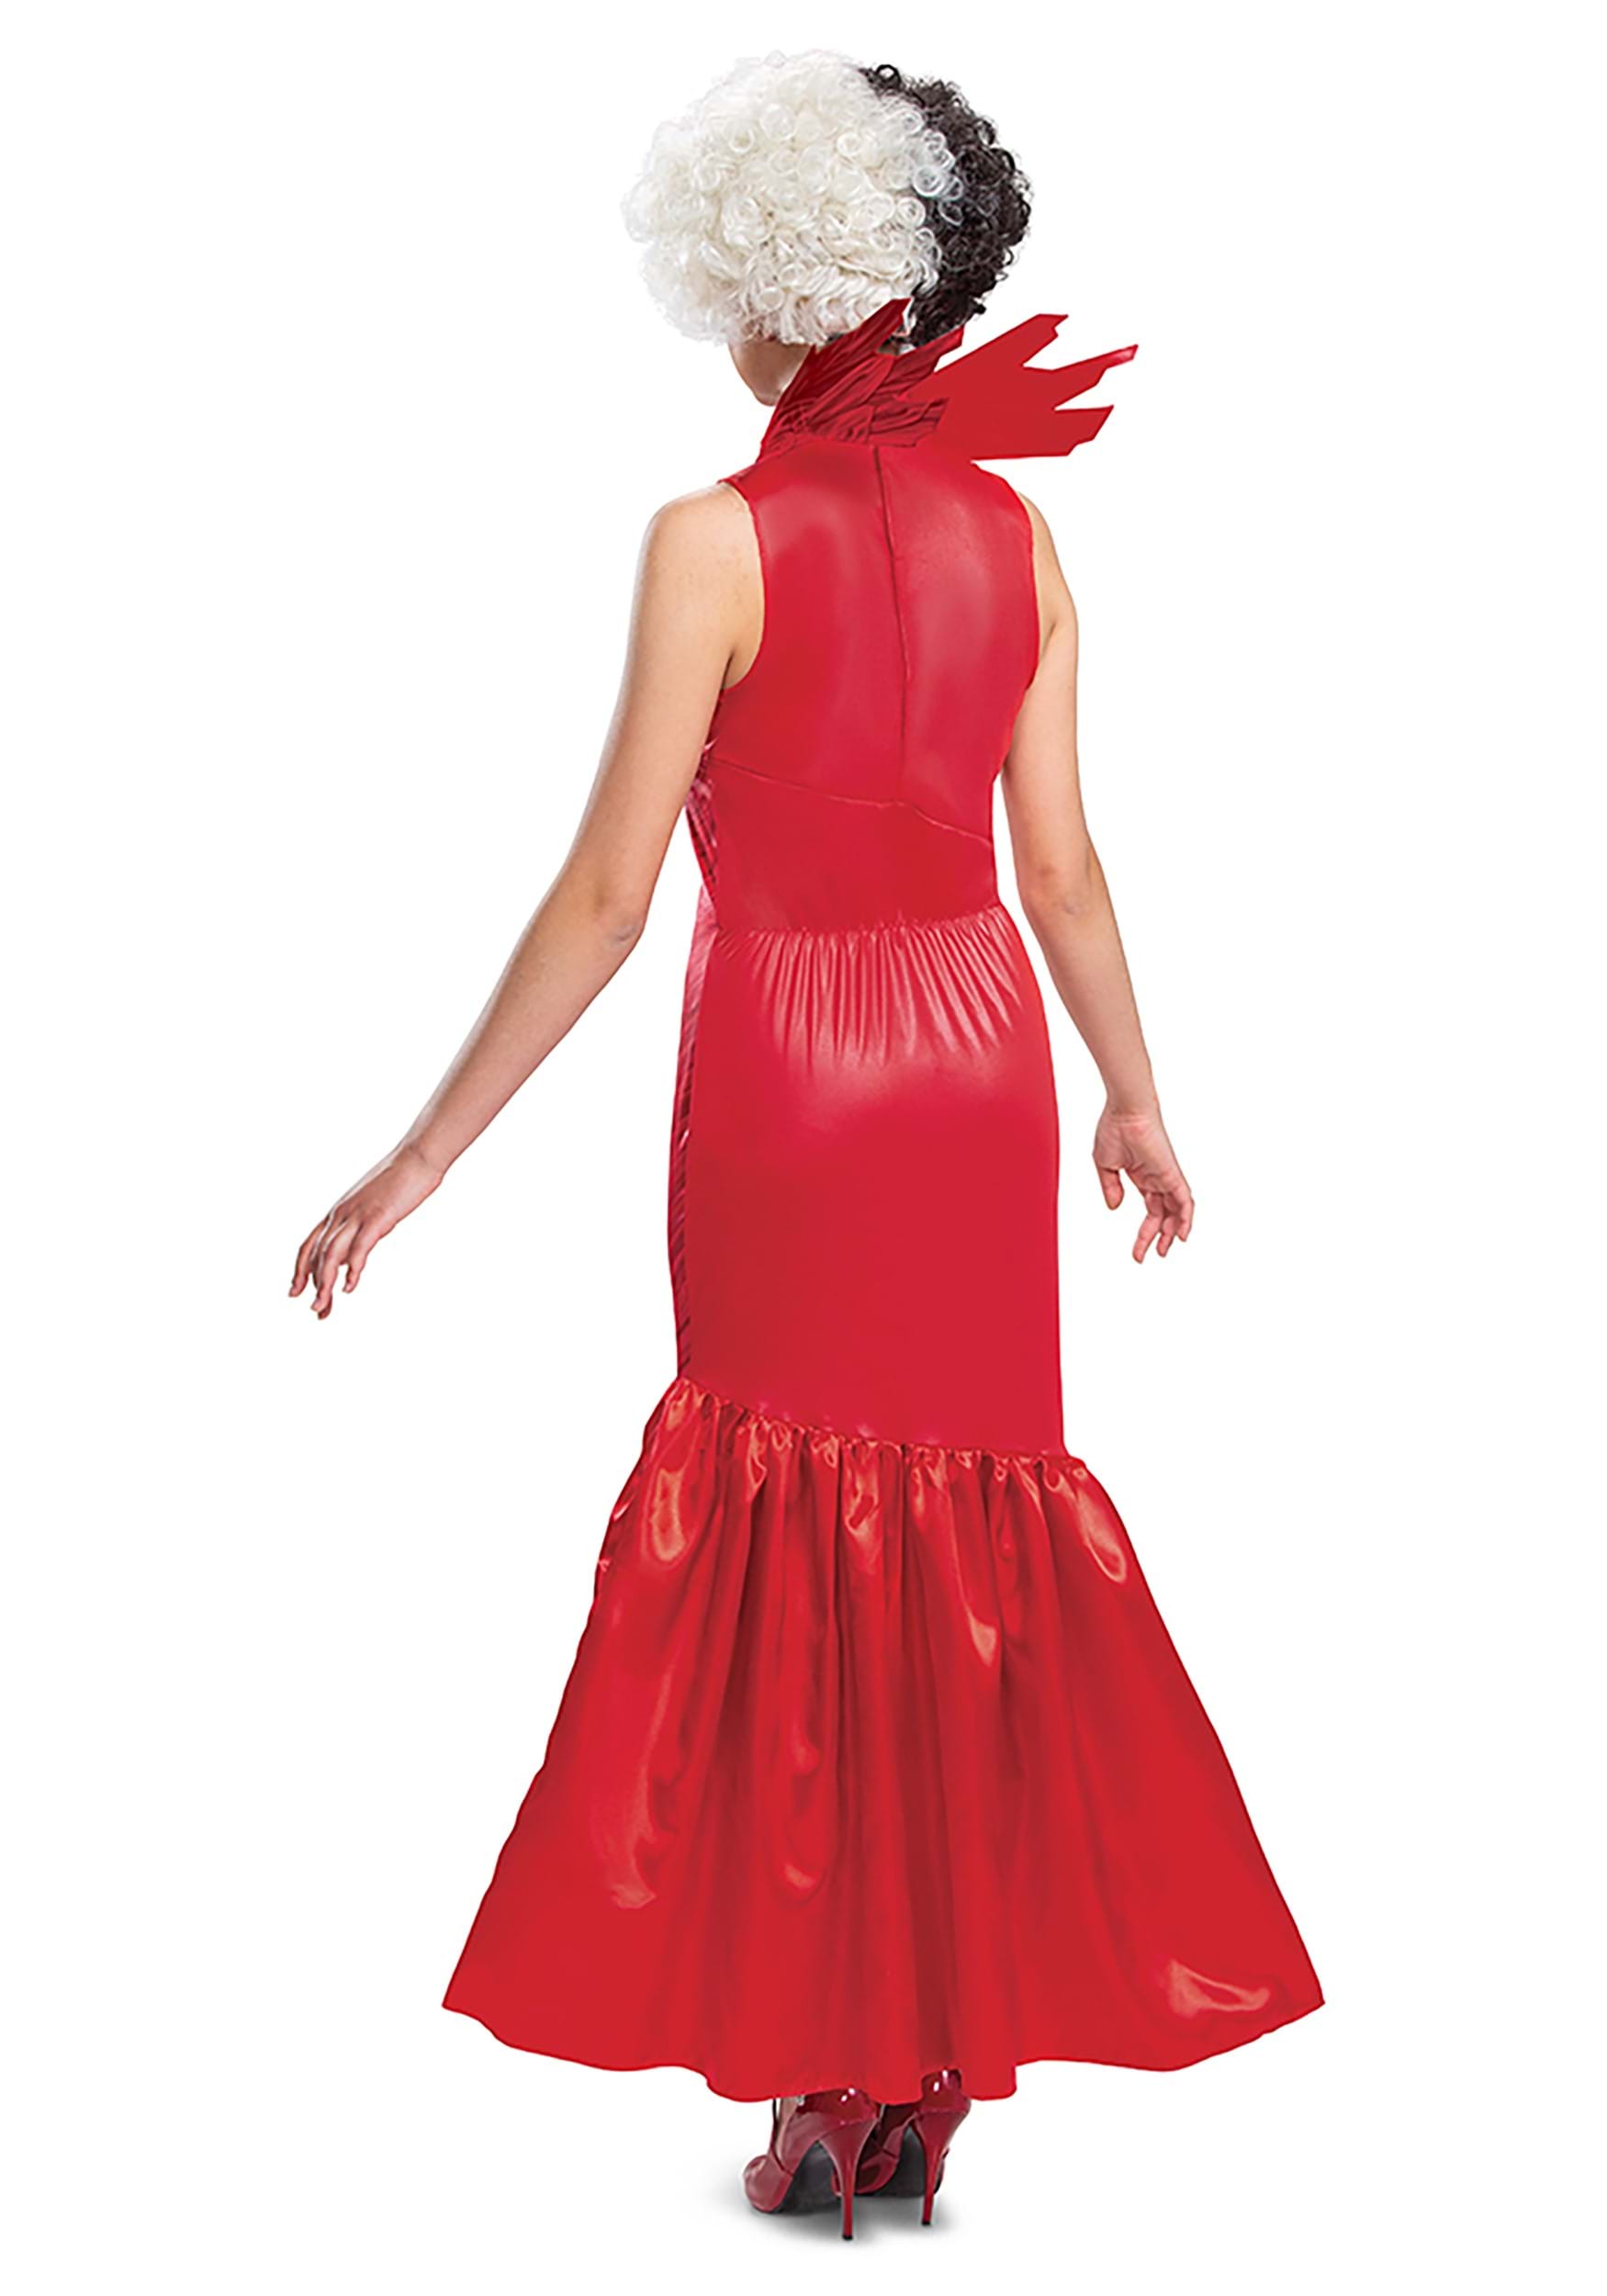 Cruella Adult Red Dress Classic Costume